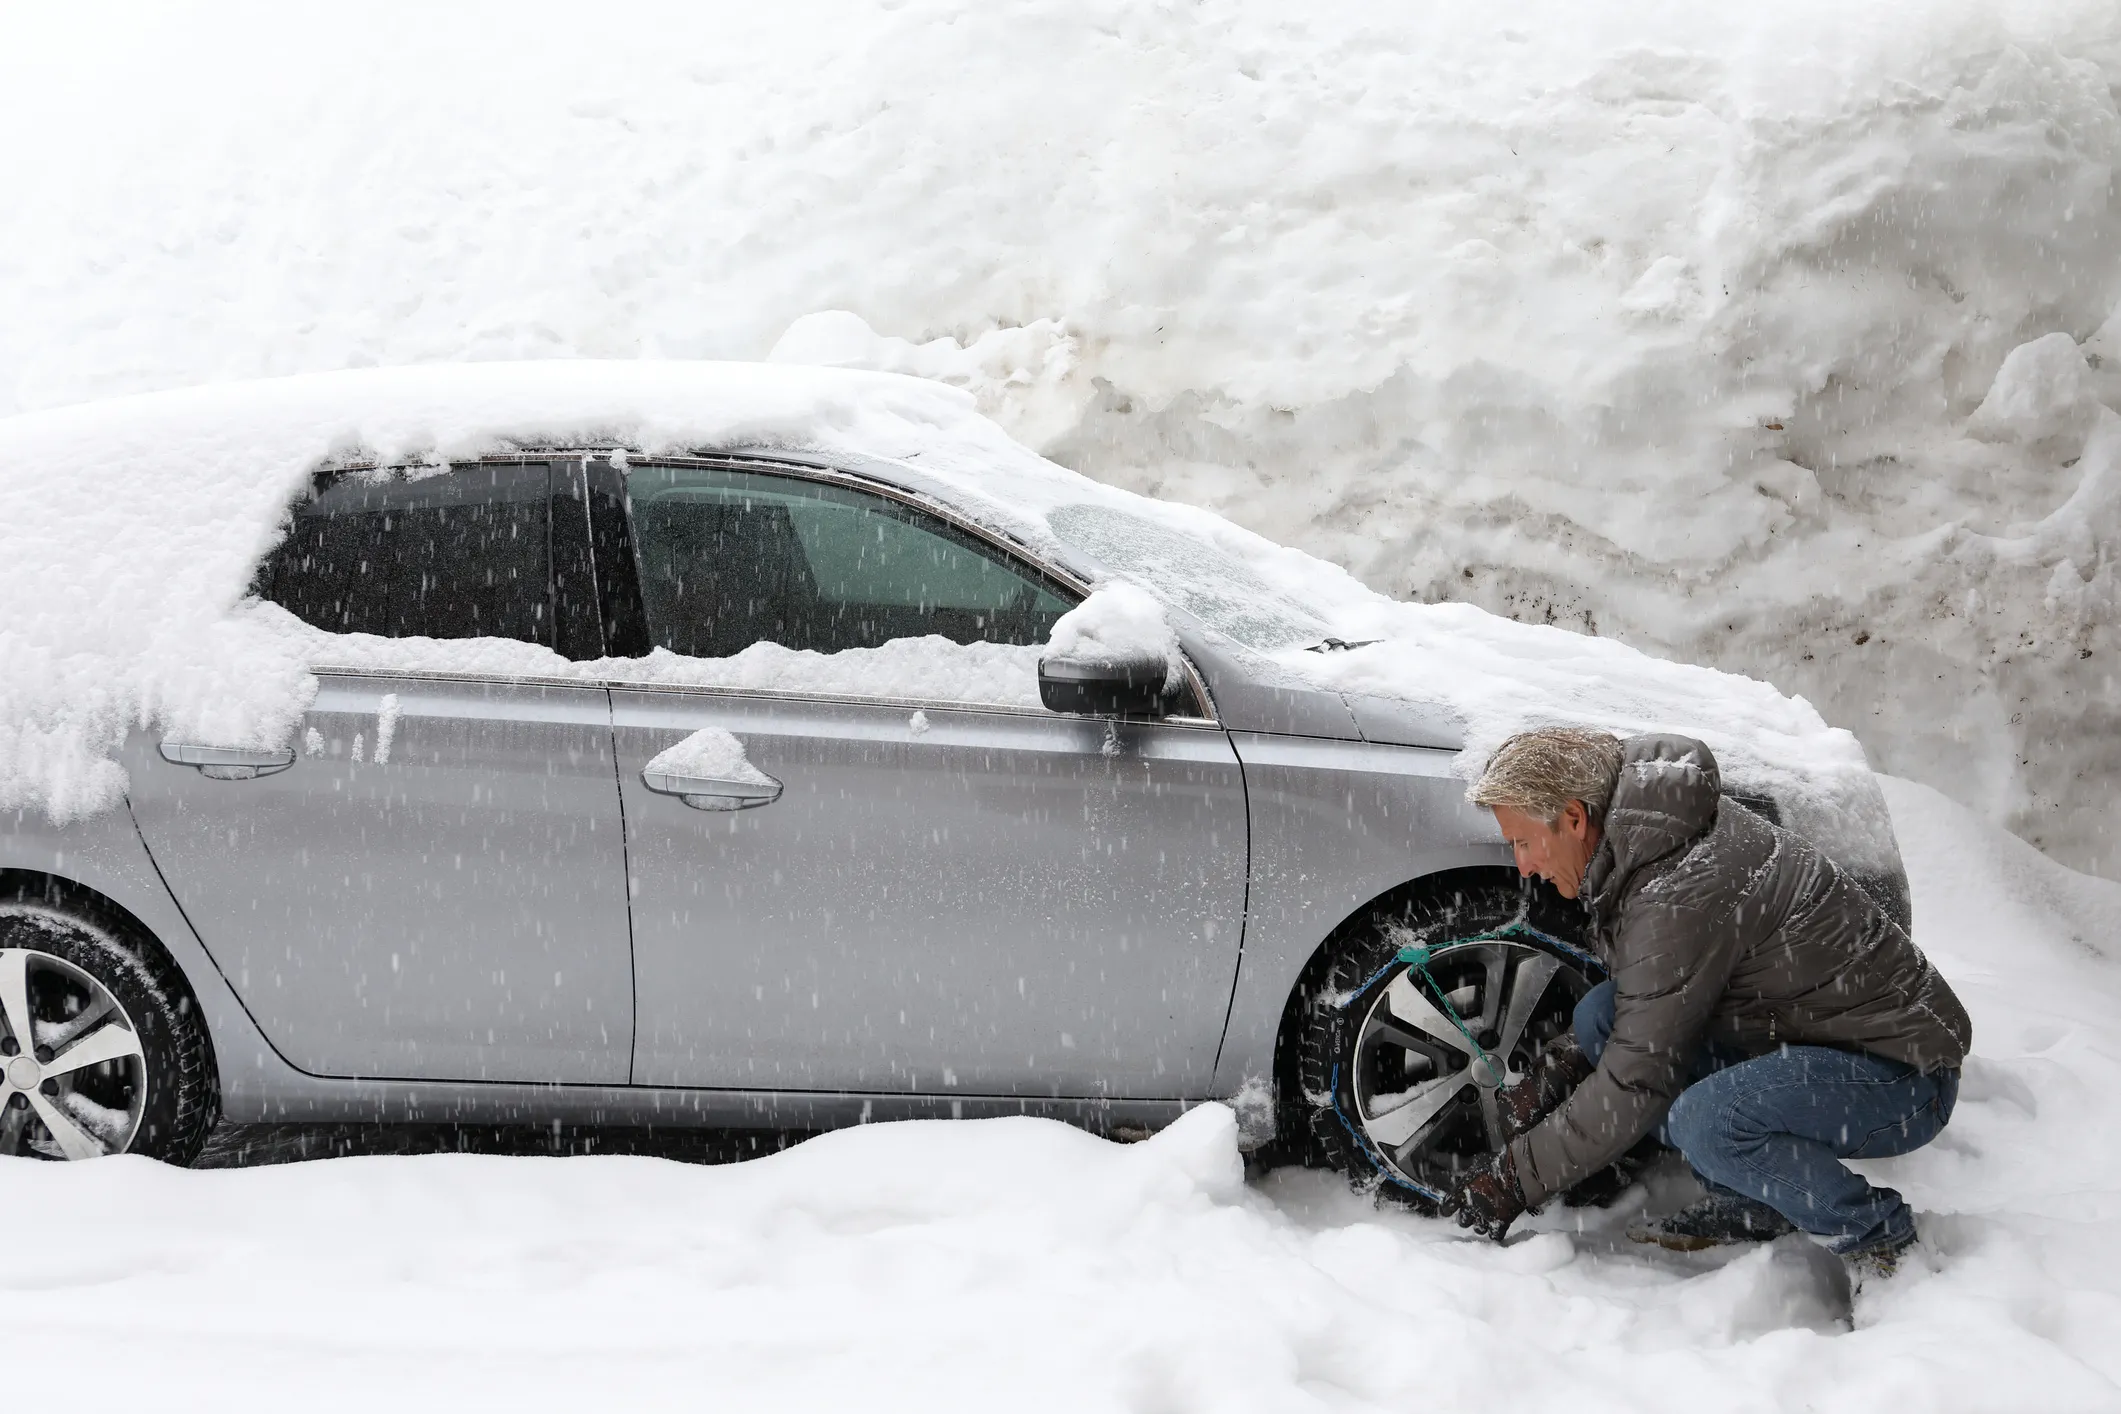 Trucos fáciles para evitar que el coche te deje tirado en invierno